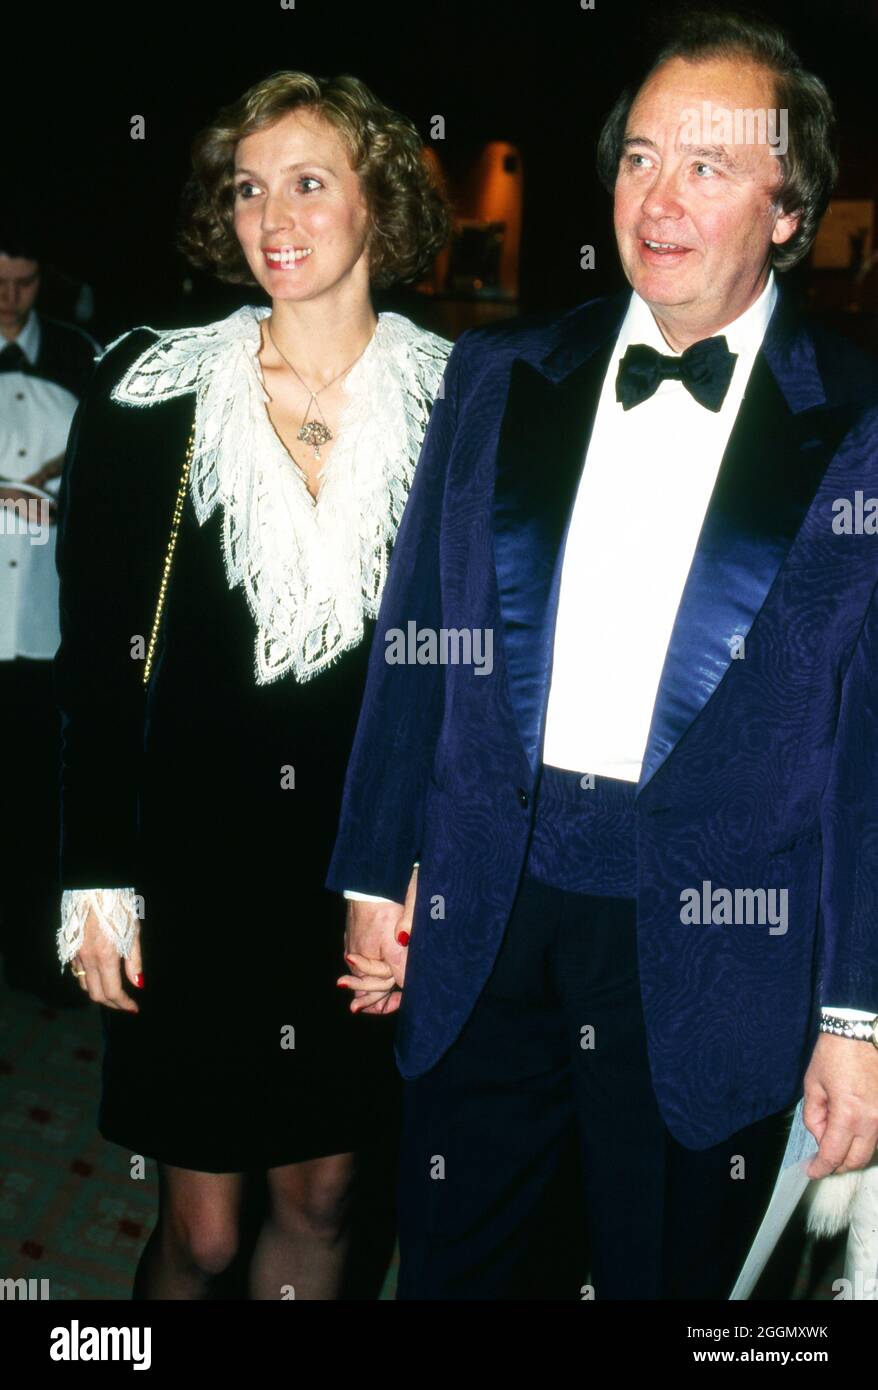 Rene Kollo, deutscher Opernsänger, mit Ehefrau Beatrice, Deutschland um 1993. German opera singer Rene Kollo with wife Beatrice, Germany around 1993. Stock Photo